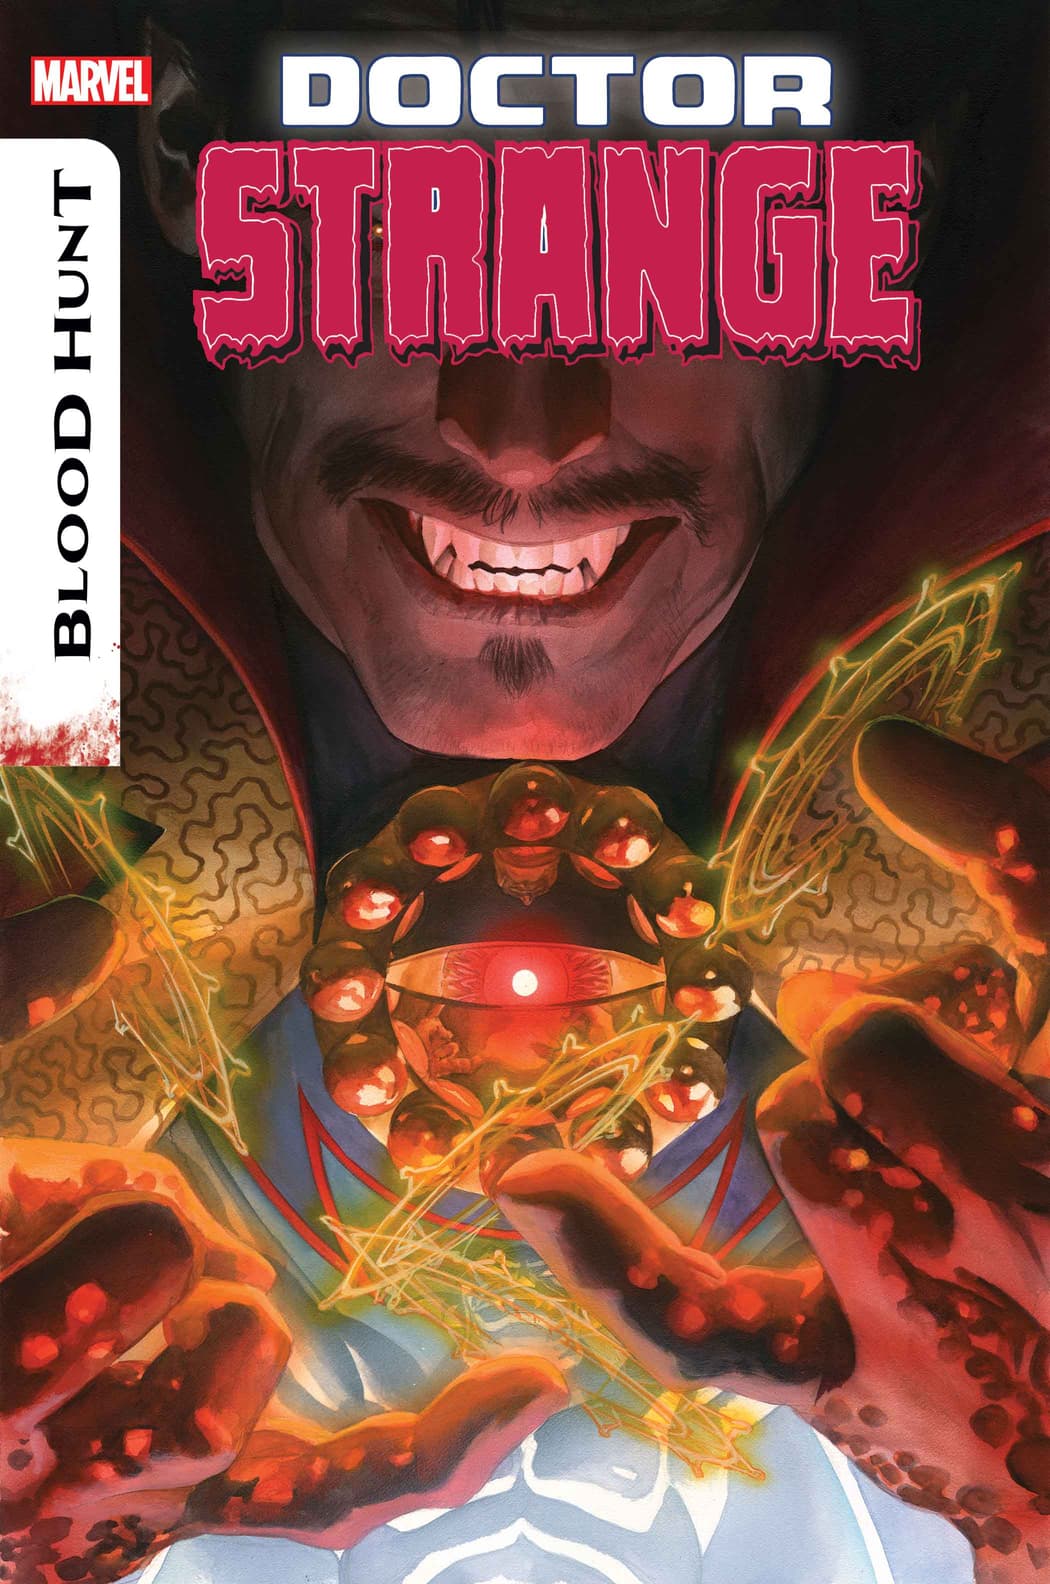 Doctor Strange #15 cover art